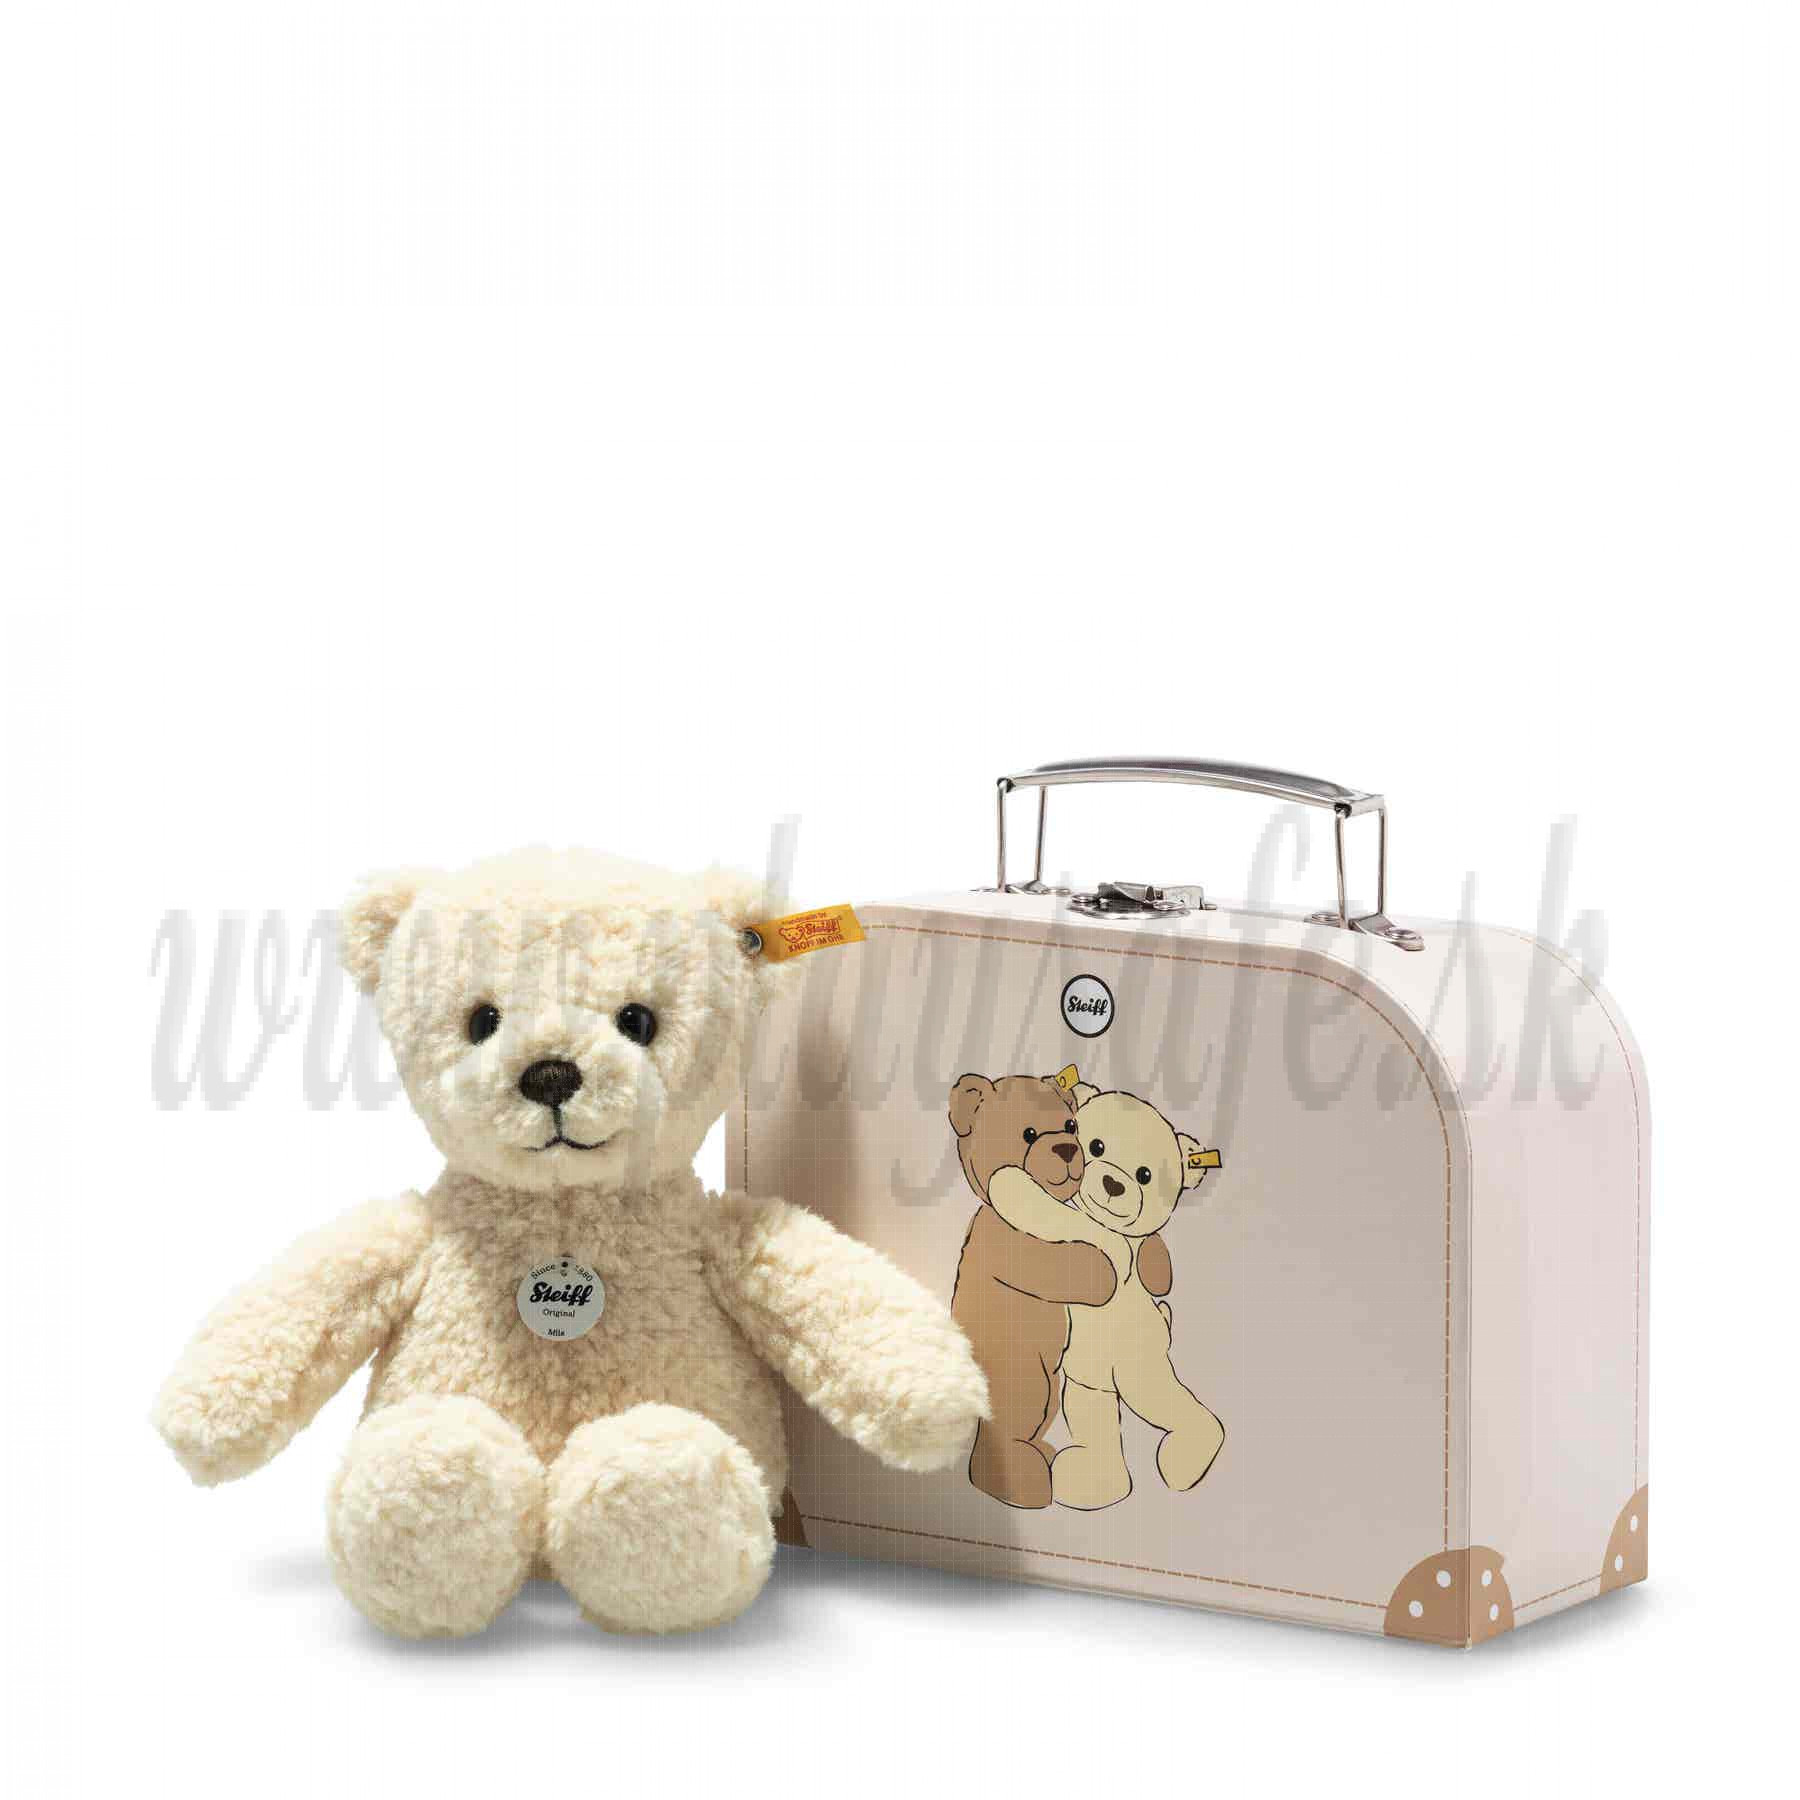 Steiff Teddy Bear Mila in suitcase, 21cm